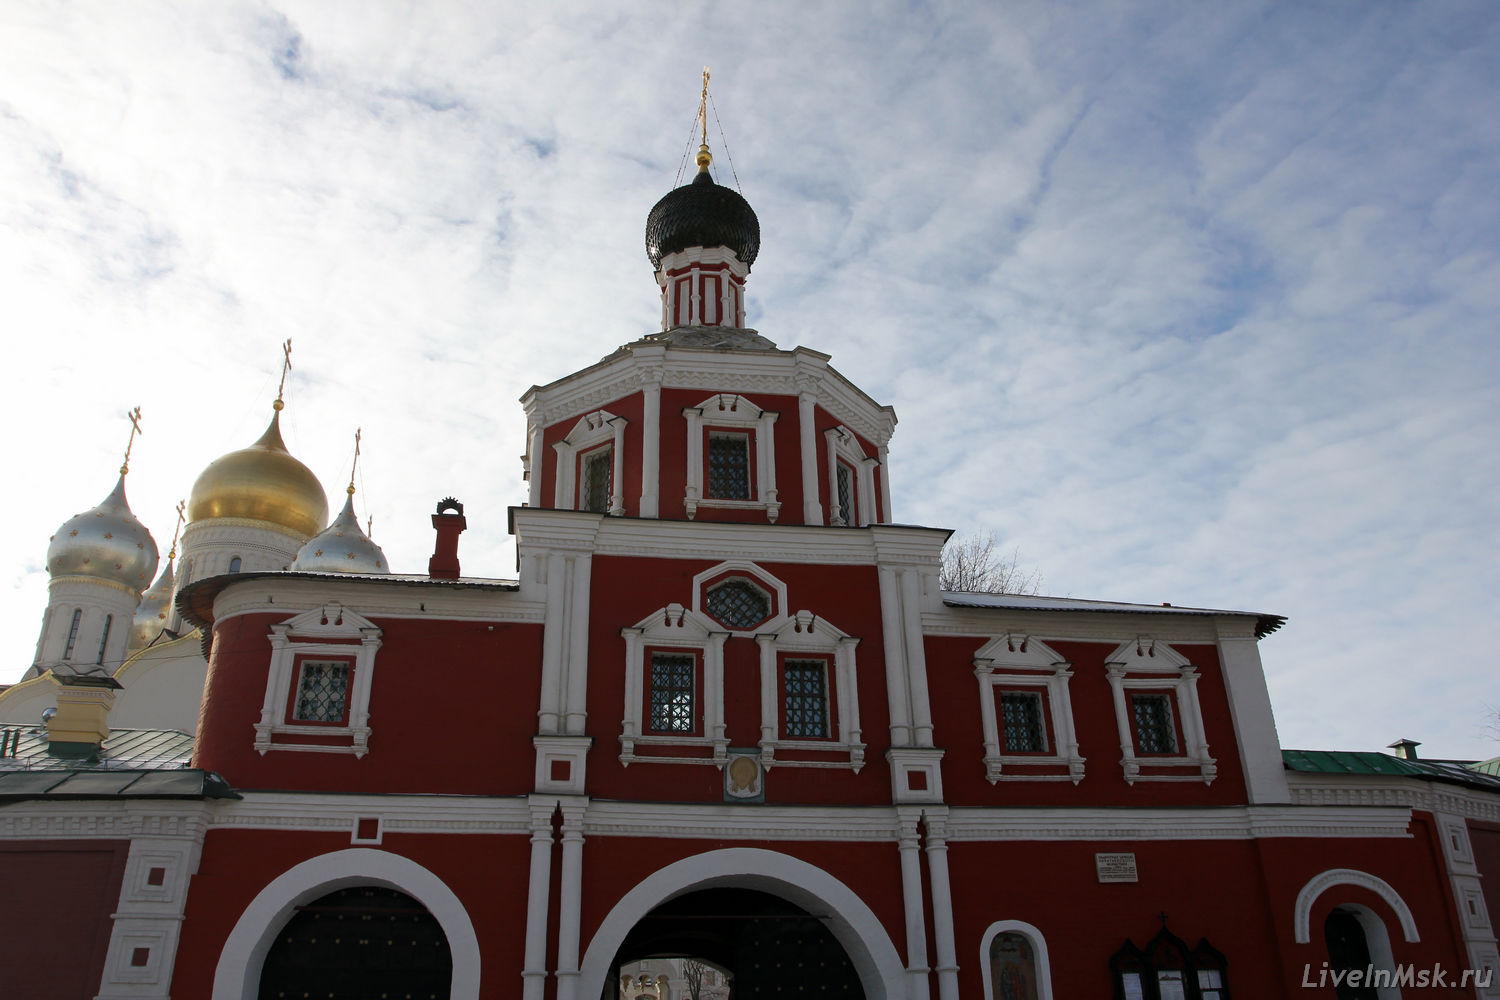 Надвратная церковь Зачатьевского монастыря